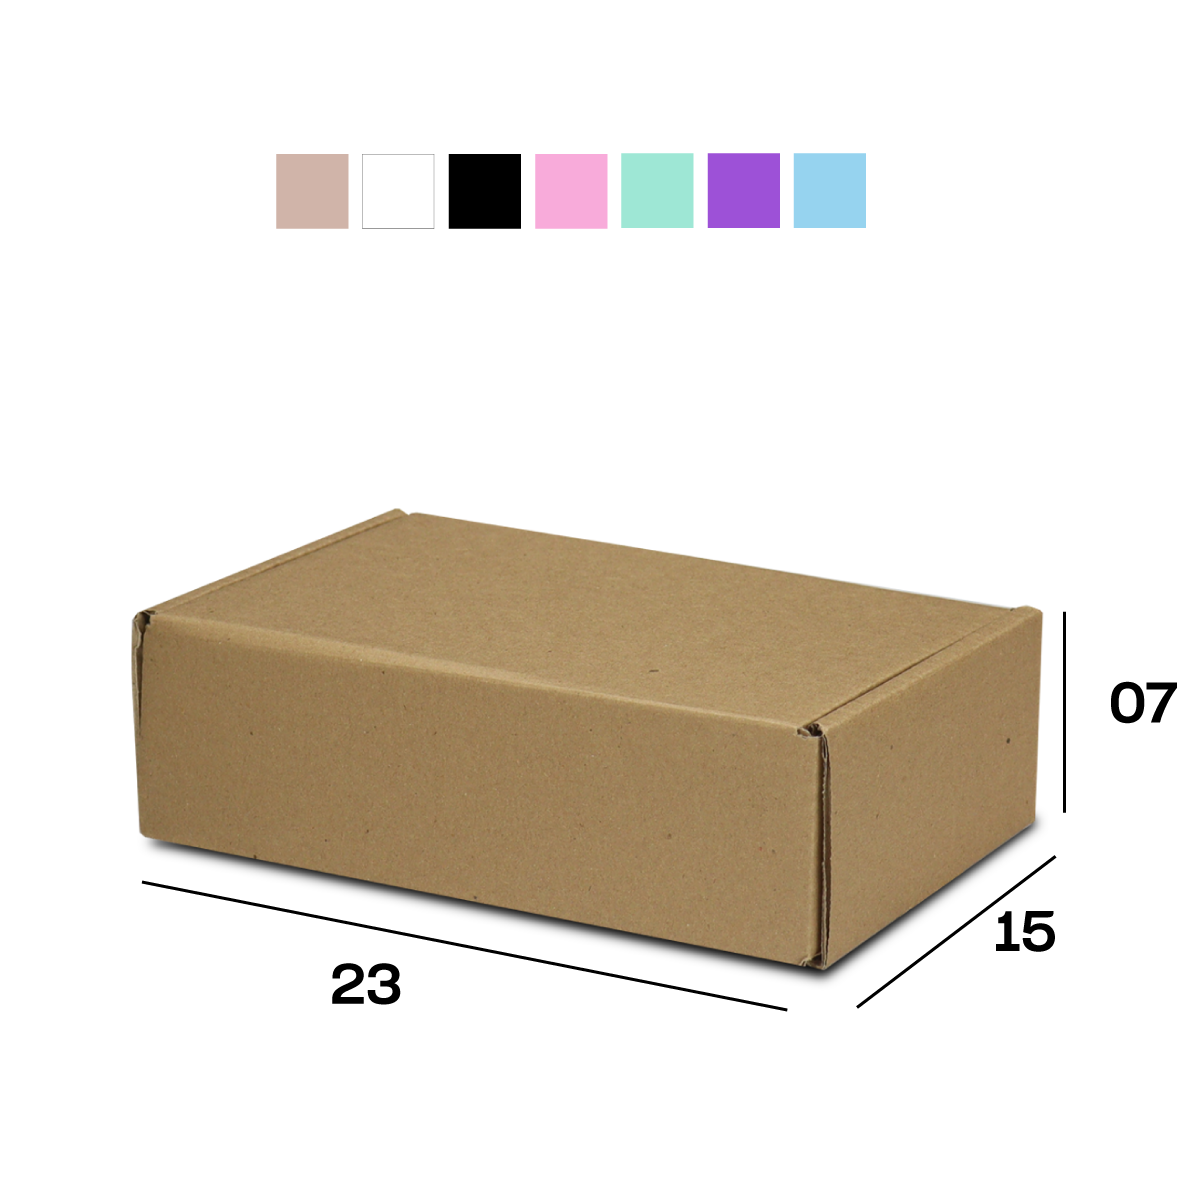 Caixa de Papelão Sedex 05 (23x15x7) Lisa